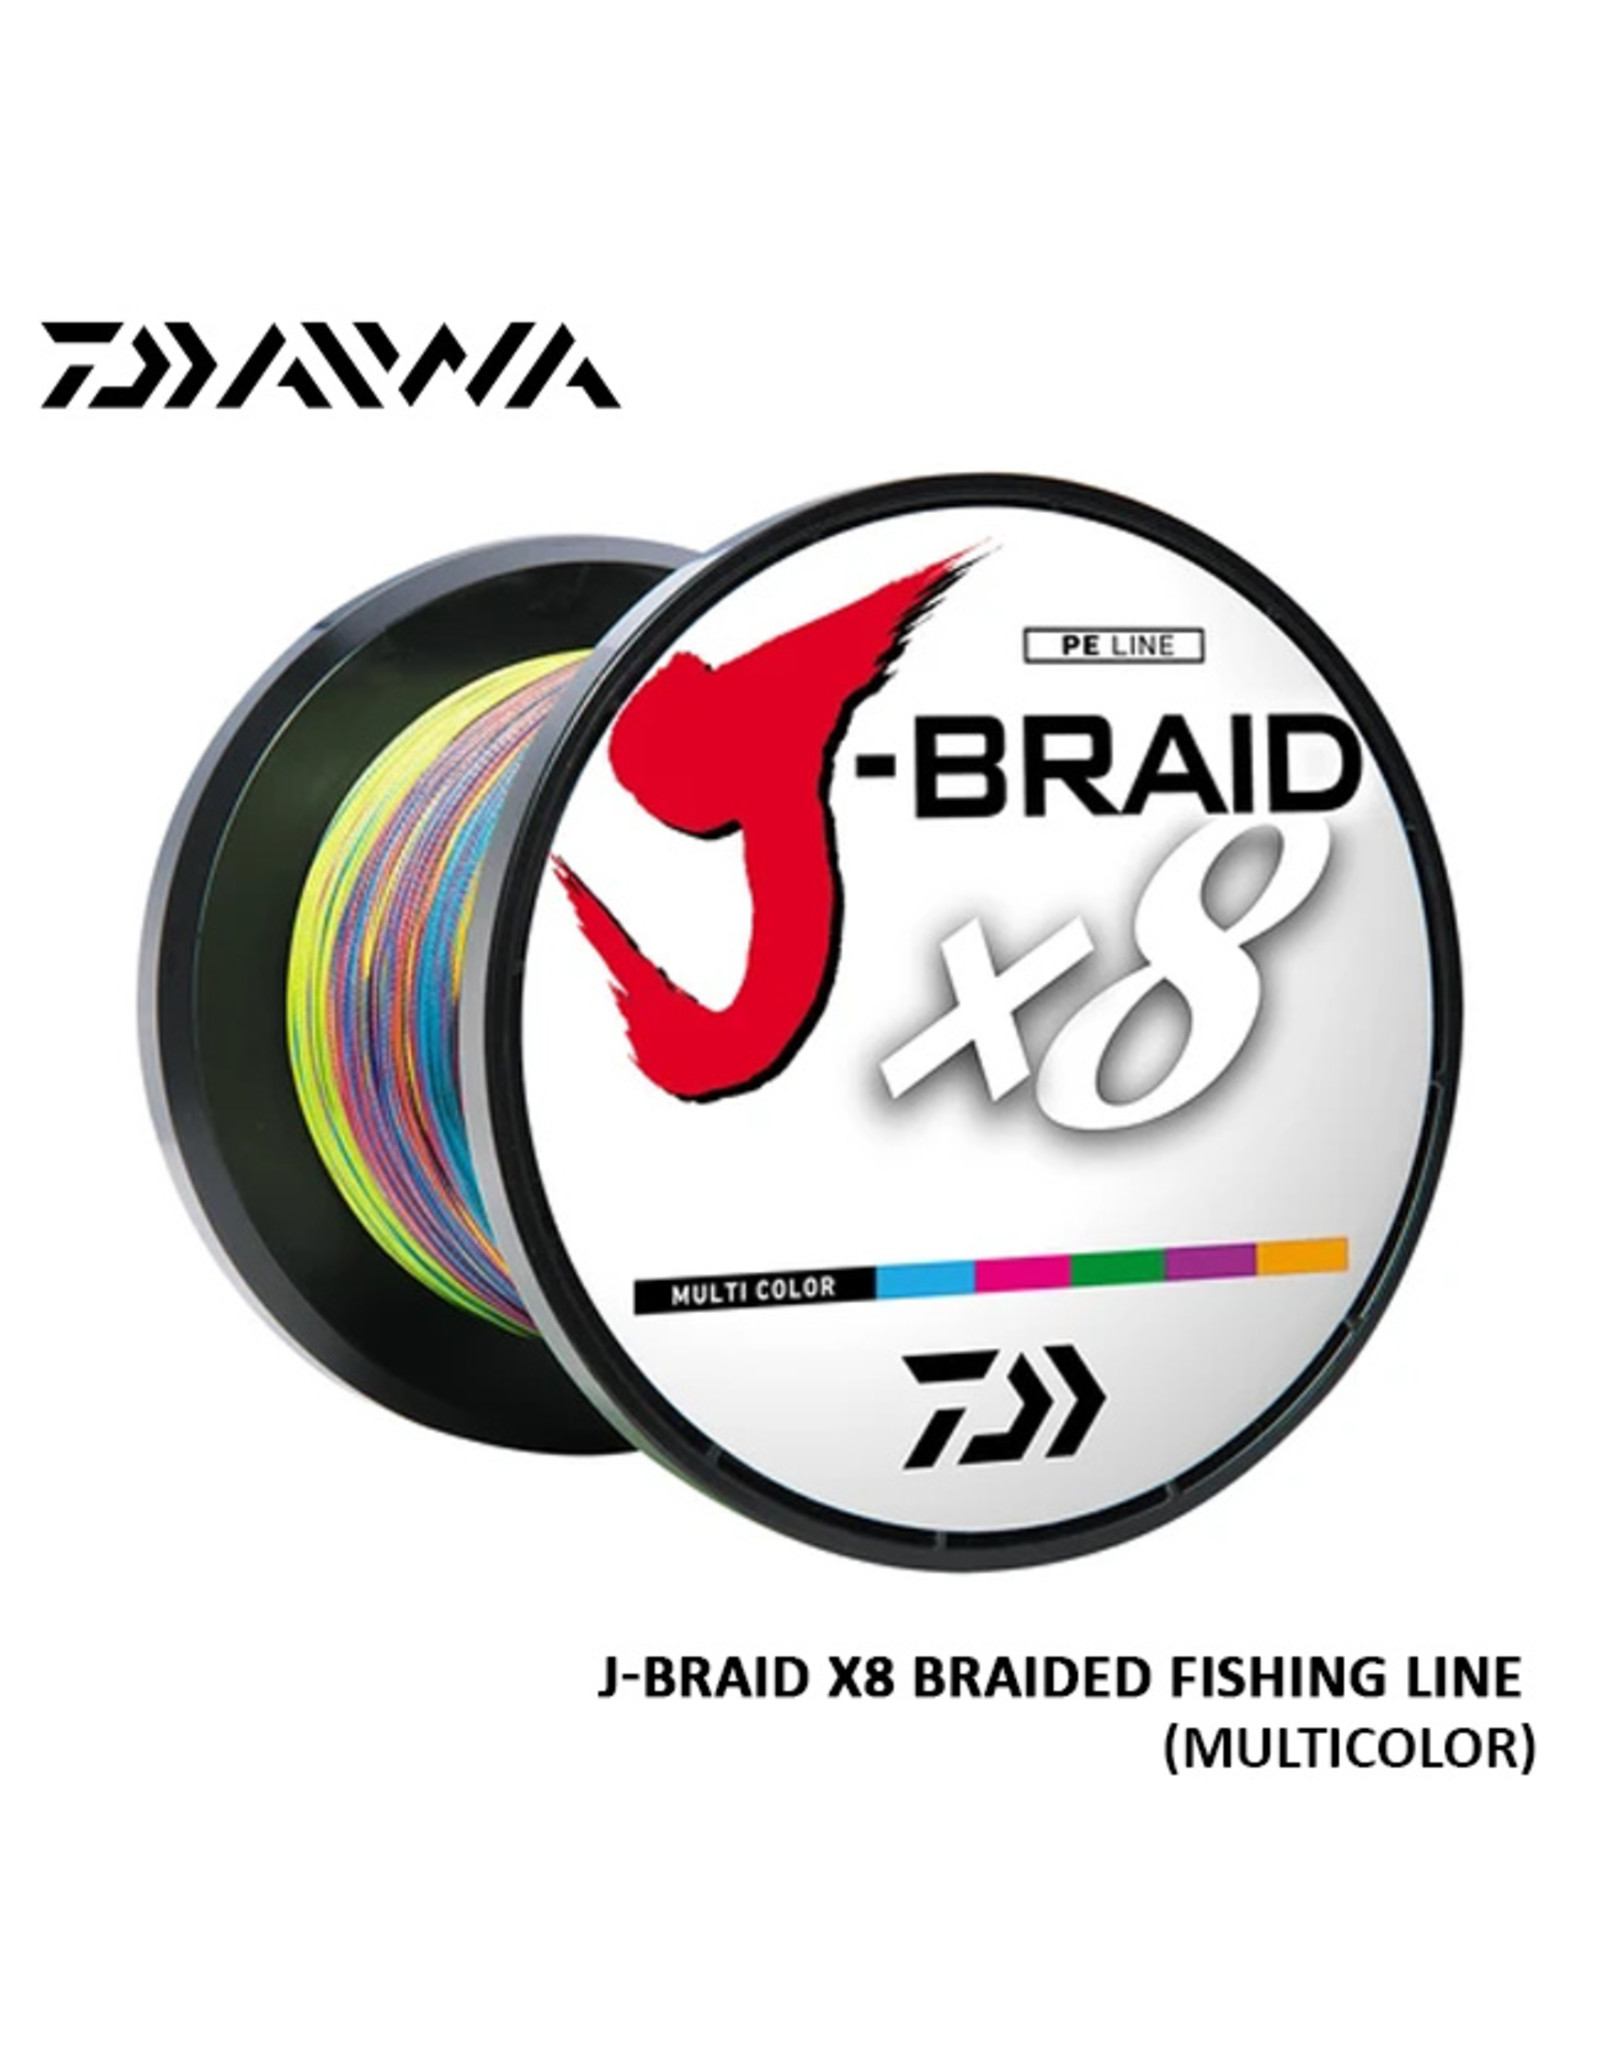 DAIWA (DAI) DAIWA, J-BRAID X8 FISHING LINE 500METER/MULTICOLOR 40#